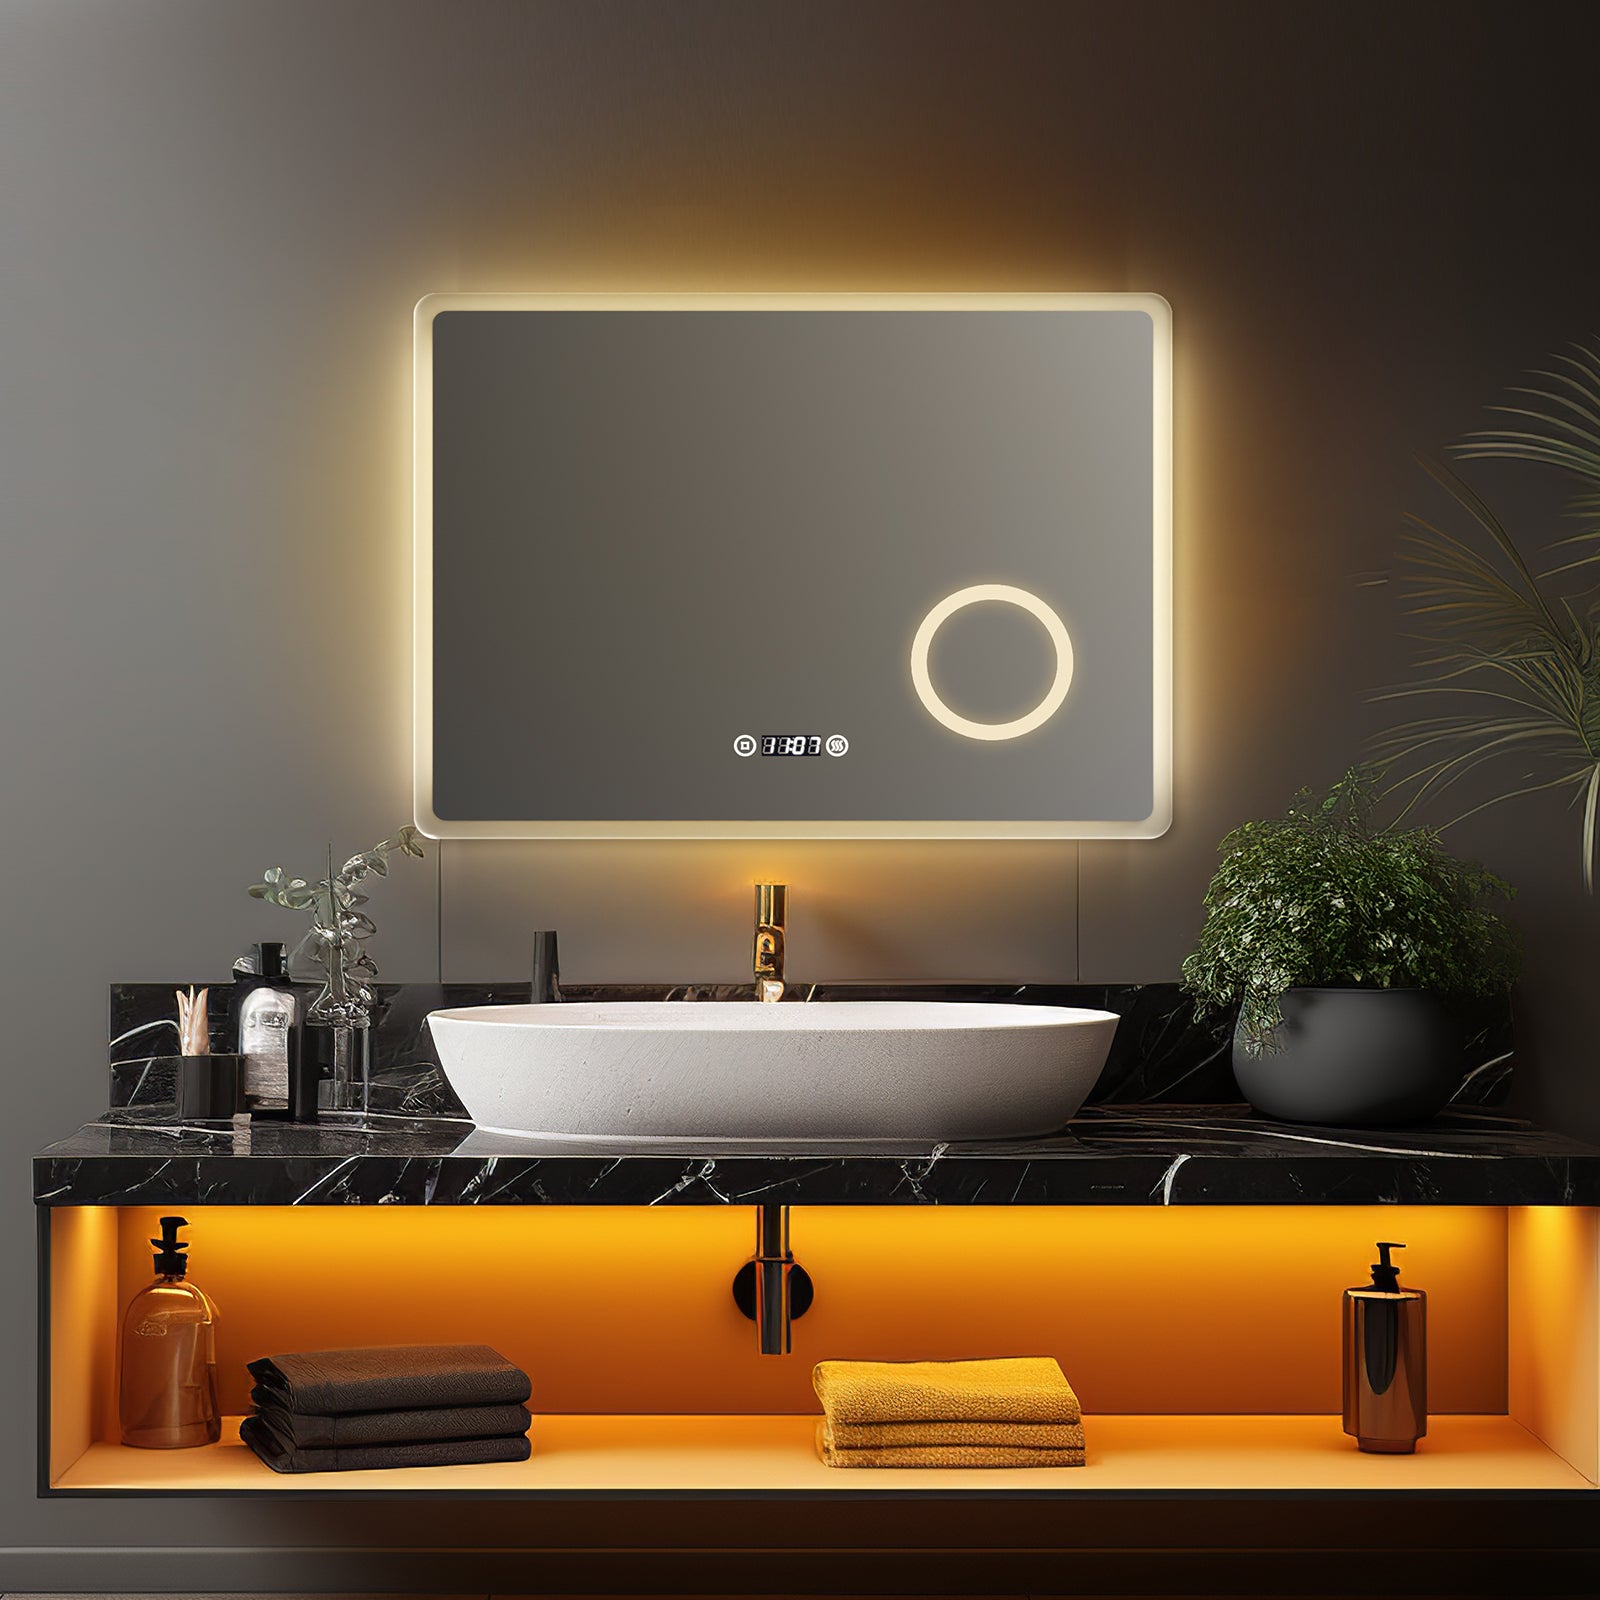 EMKE Badspiegel mit Beleuchtung „LeeMi πX Plus“ 60*80cm 3 Lichtfarben, Touch, Dimmbar, Beschlagfrei, 3x Lupe, Uhr